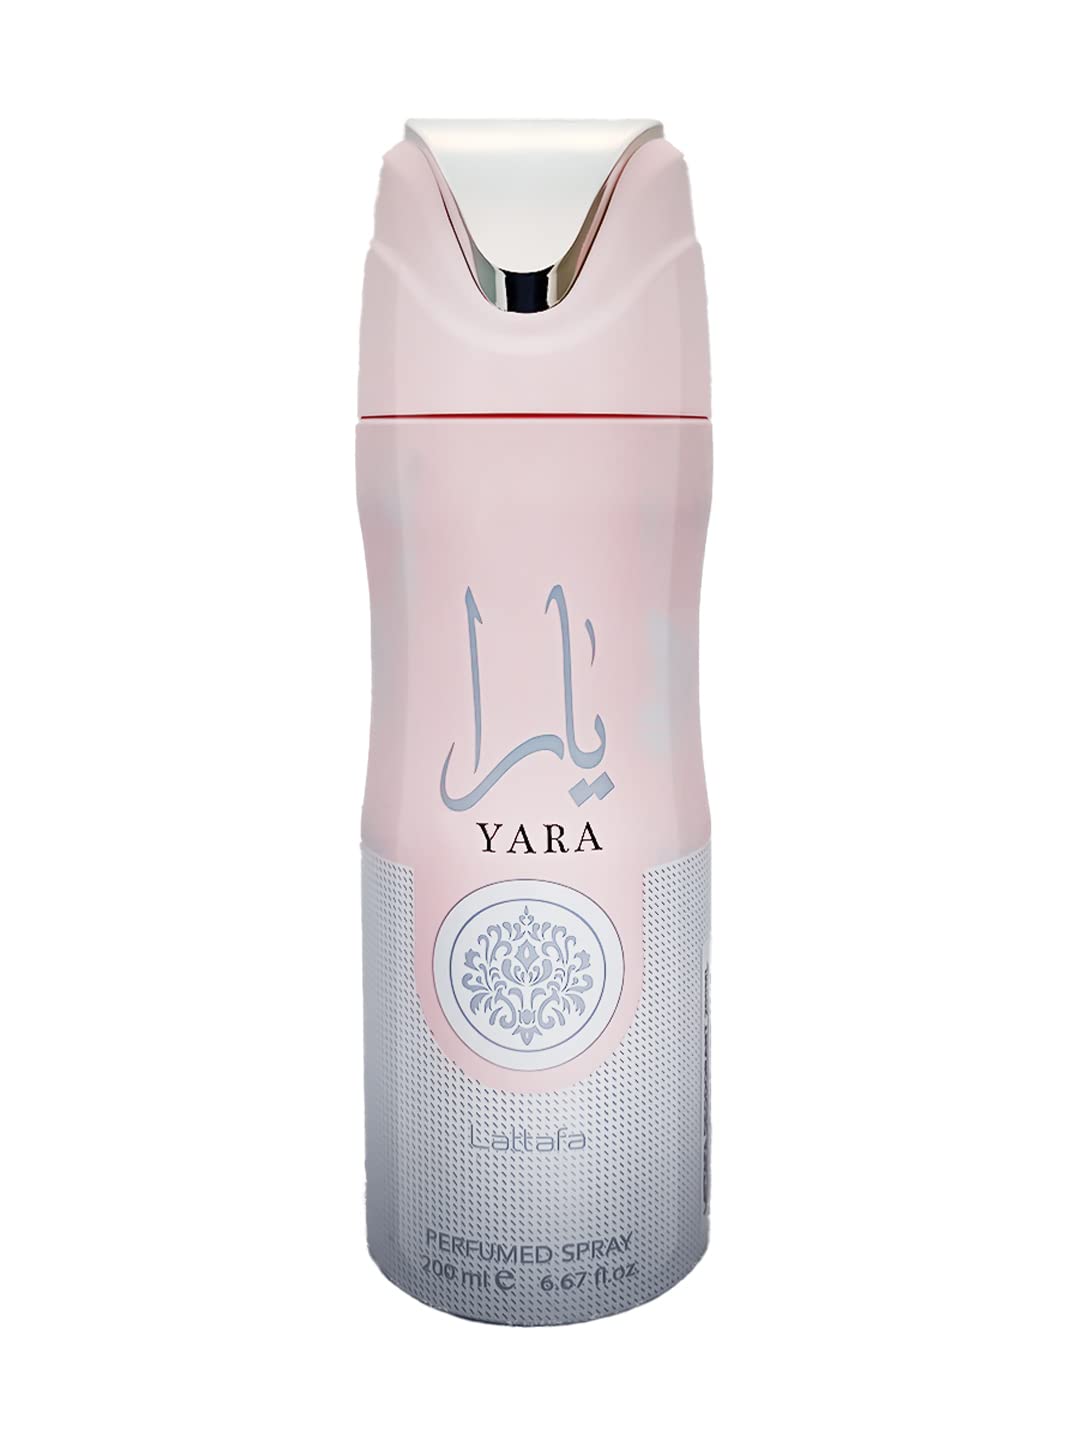 Yara Deodorant  200ml